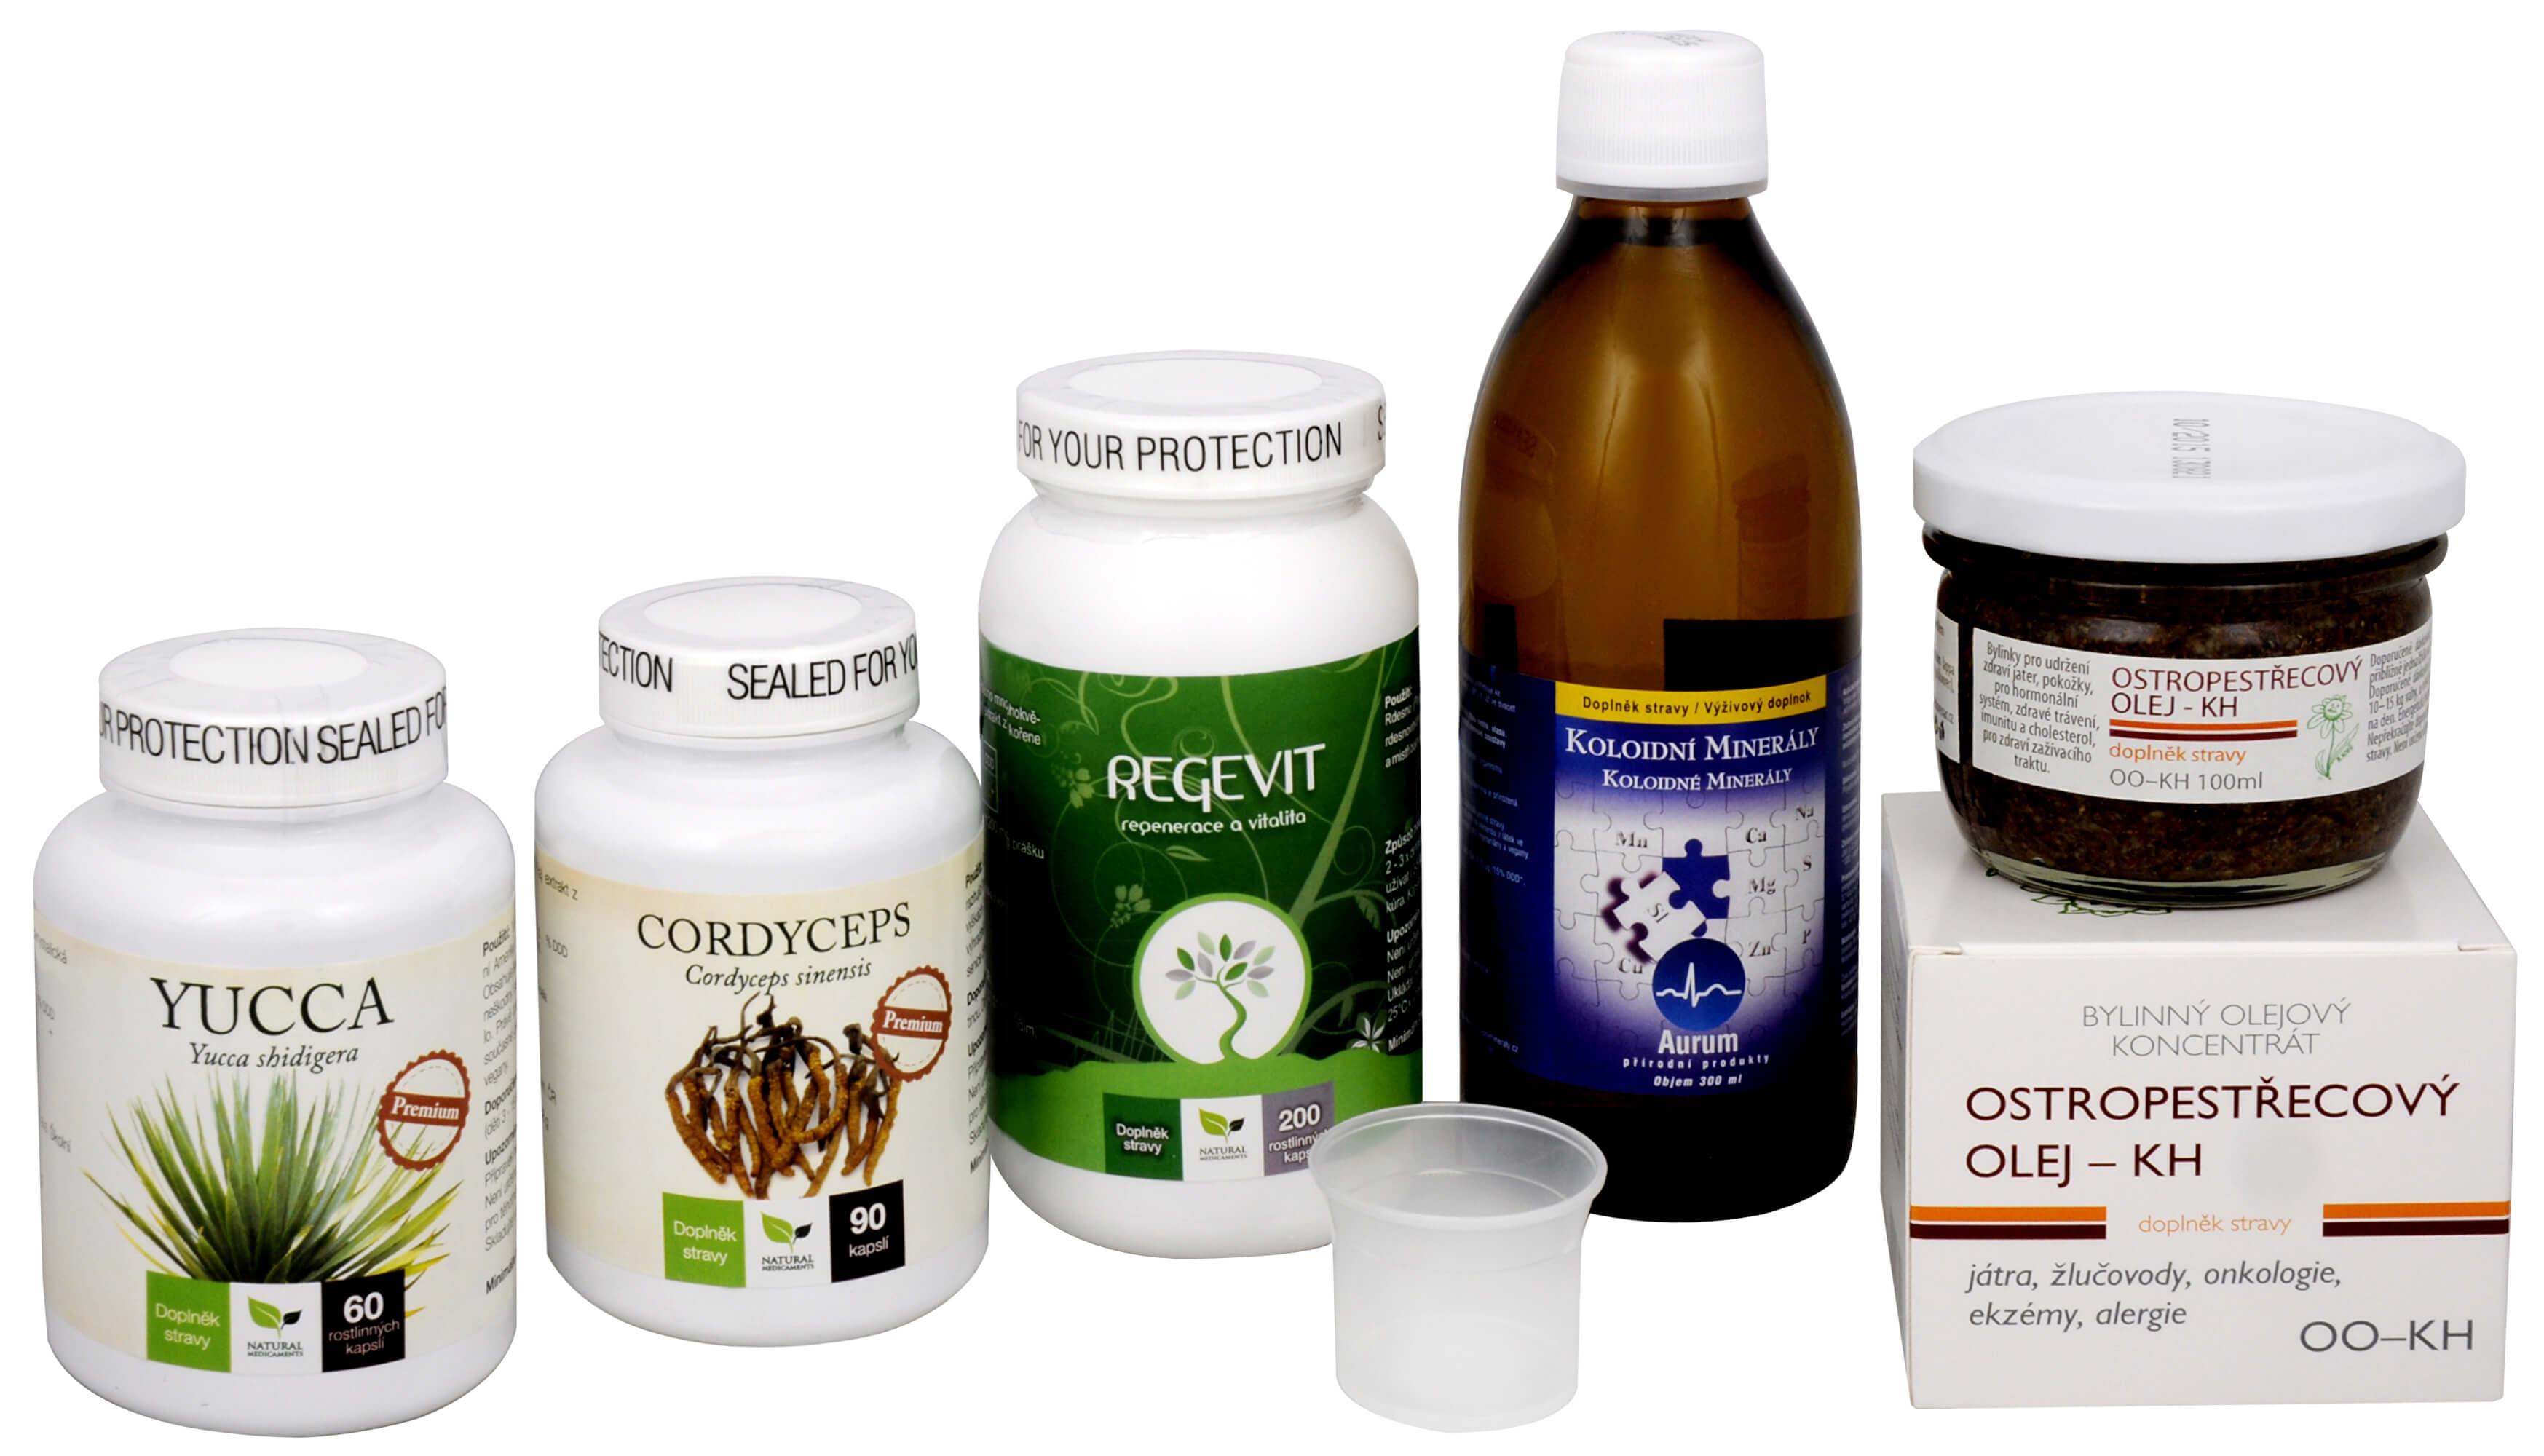 Doporučená kombinace produktů Na Únavu - Cordyceps Premium + Regevit + Koloidní minerály + Ostropestřecový olej (kaše) + Yucca + 2 měsíce na vrácení zboží